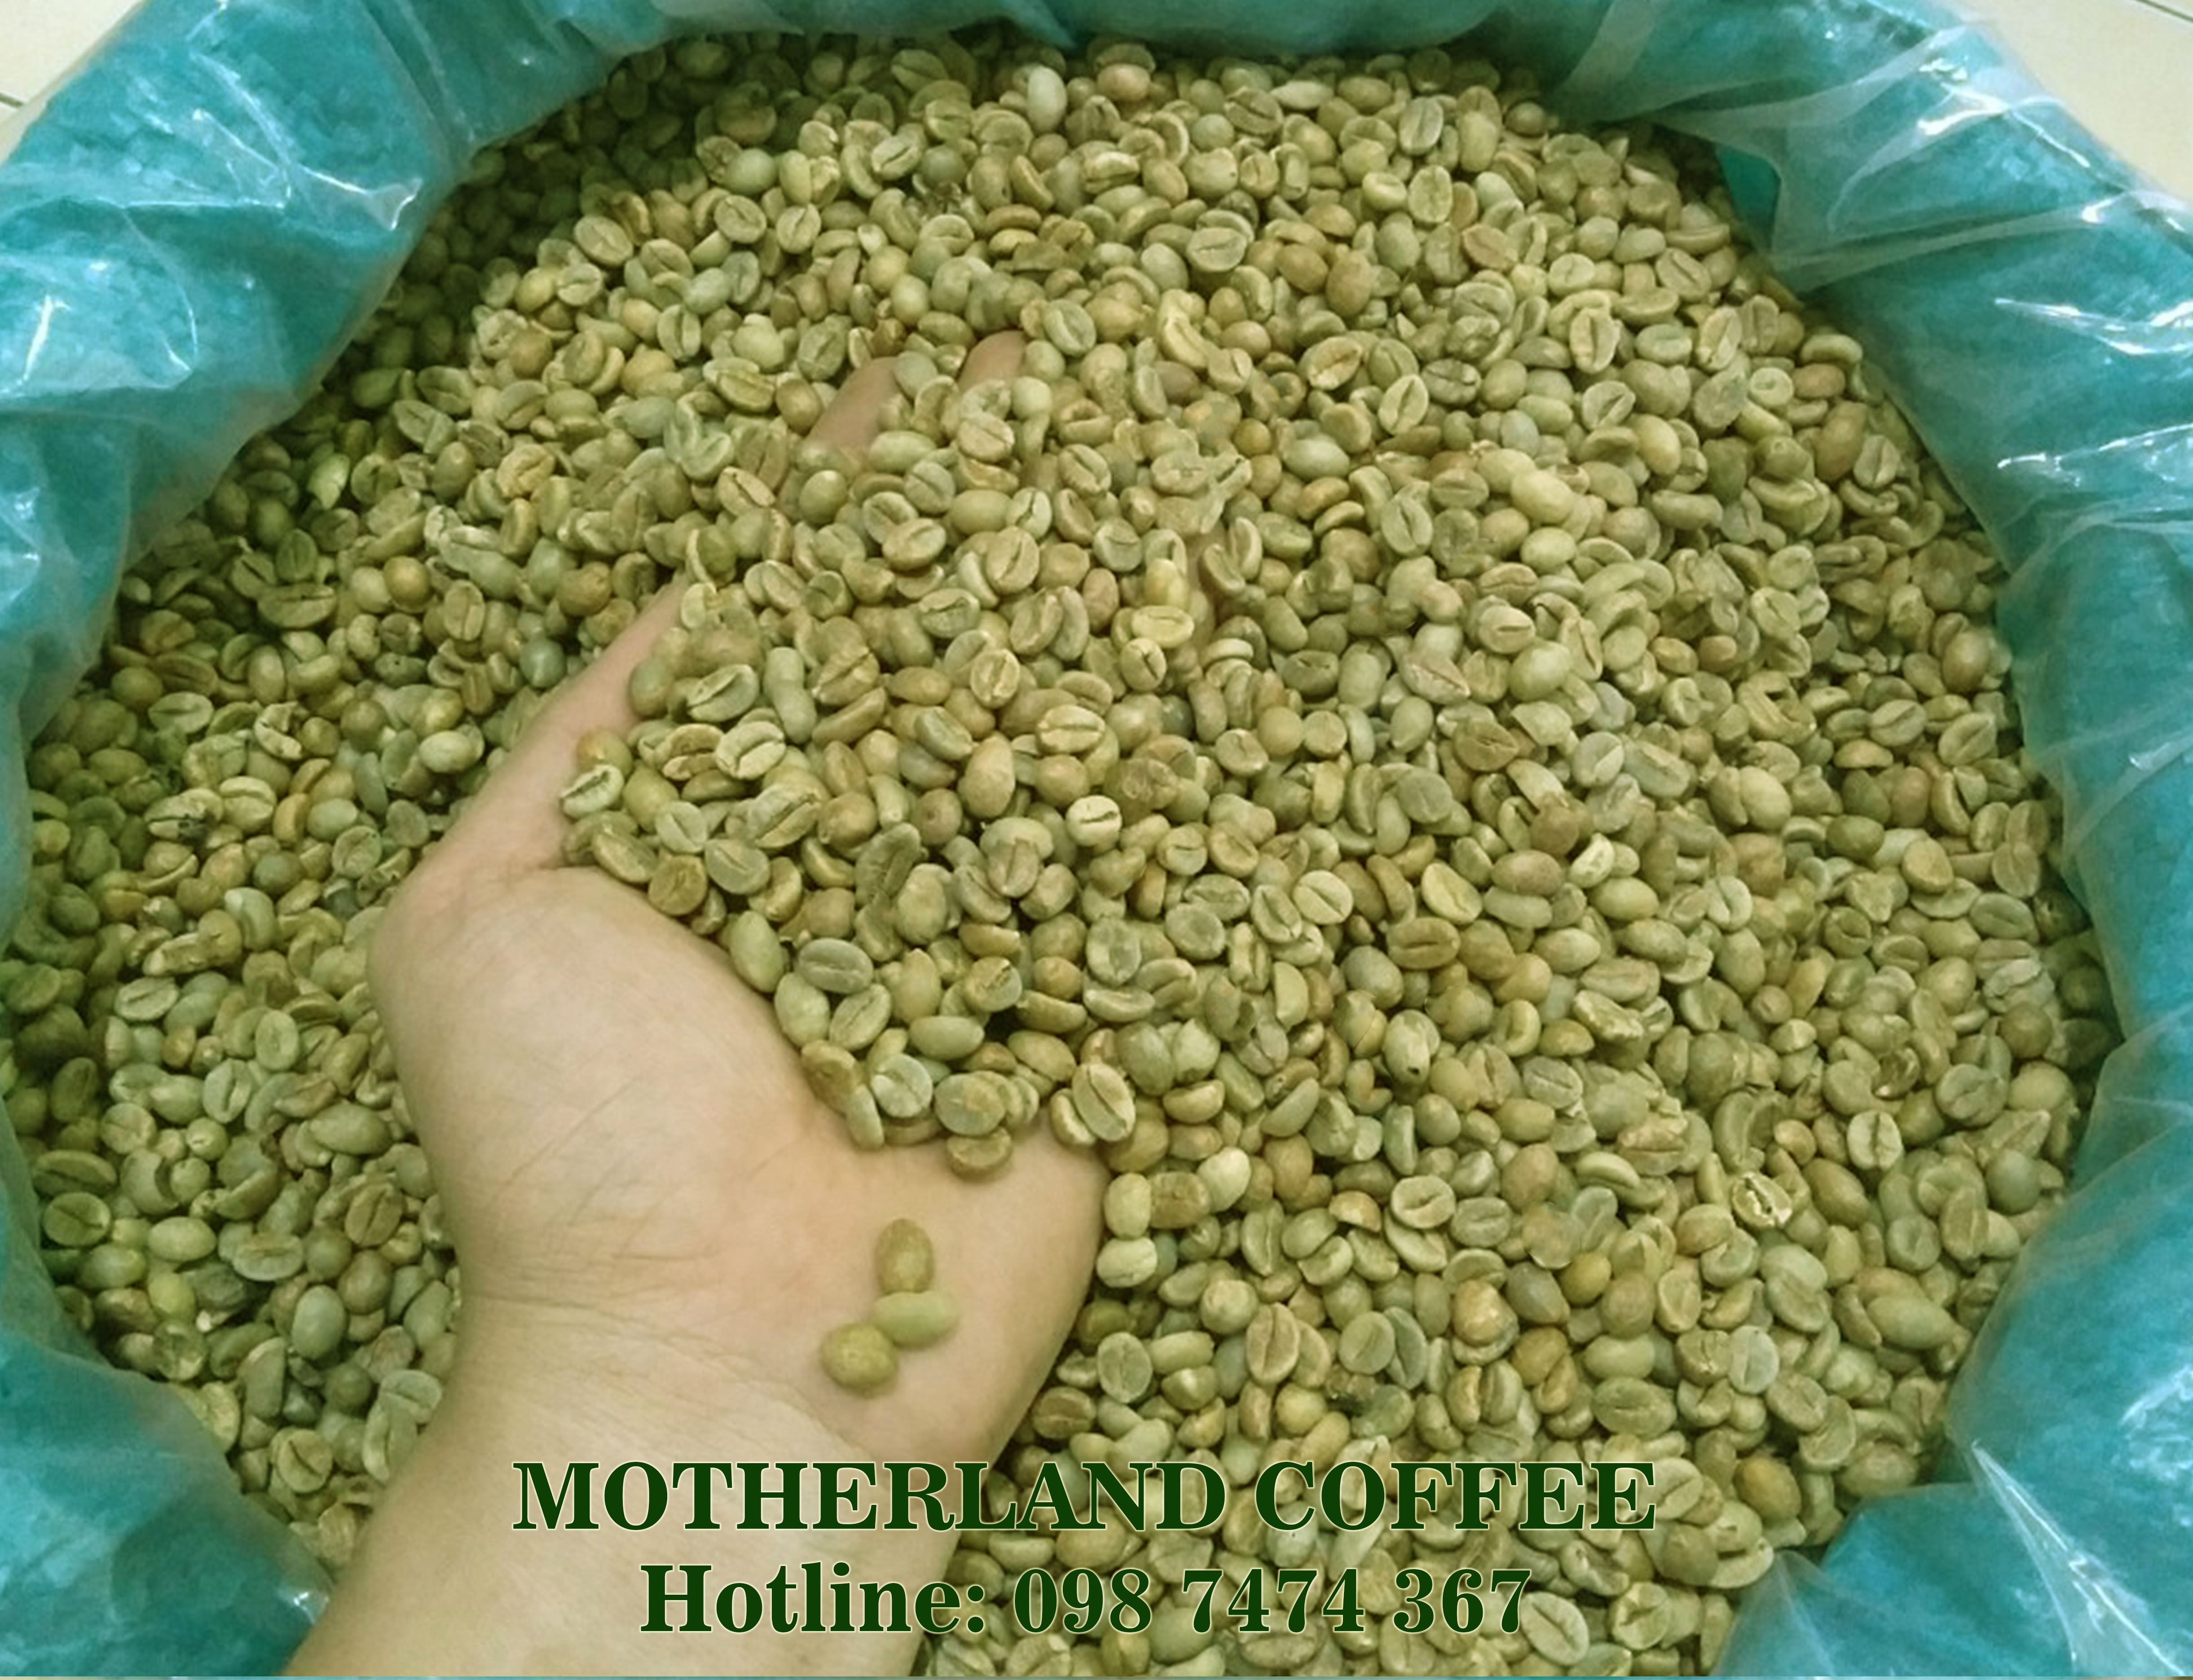 cung cấp cà phê nhân xanh culi robusta arabica hạt đẹp sàn 16, 18